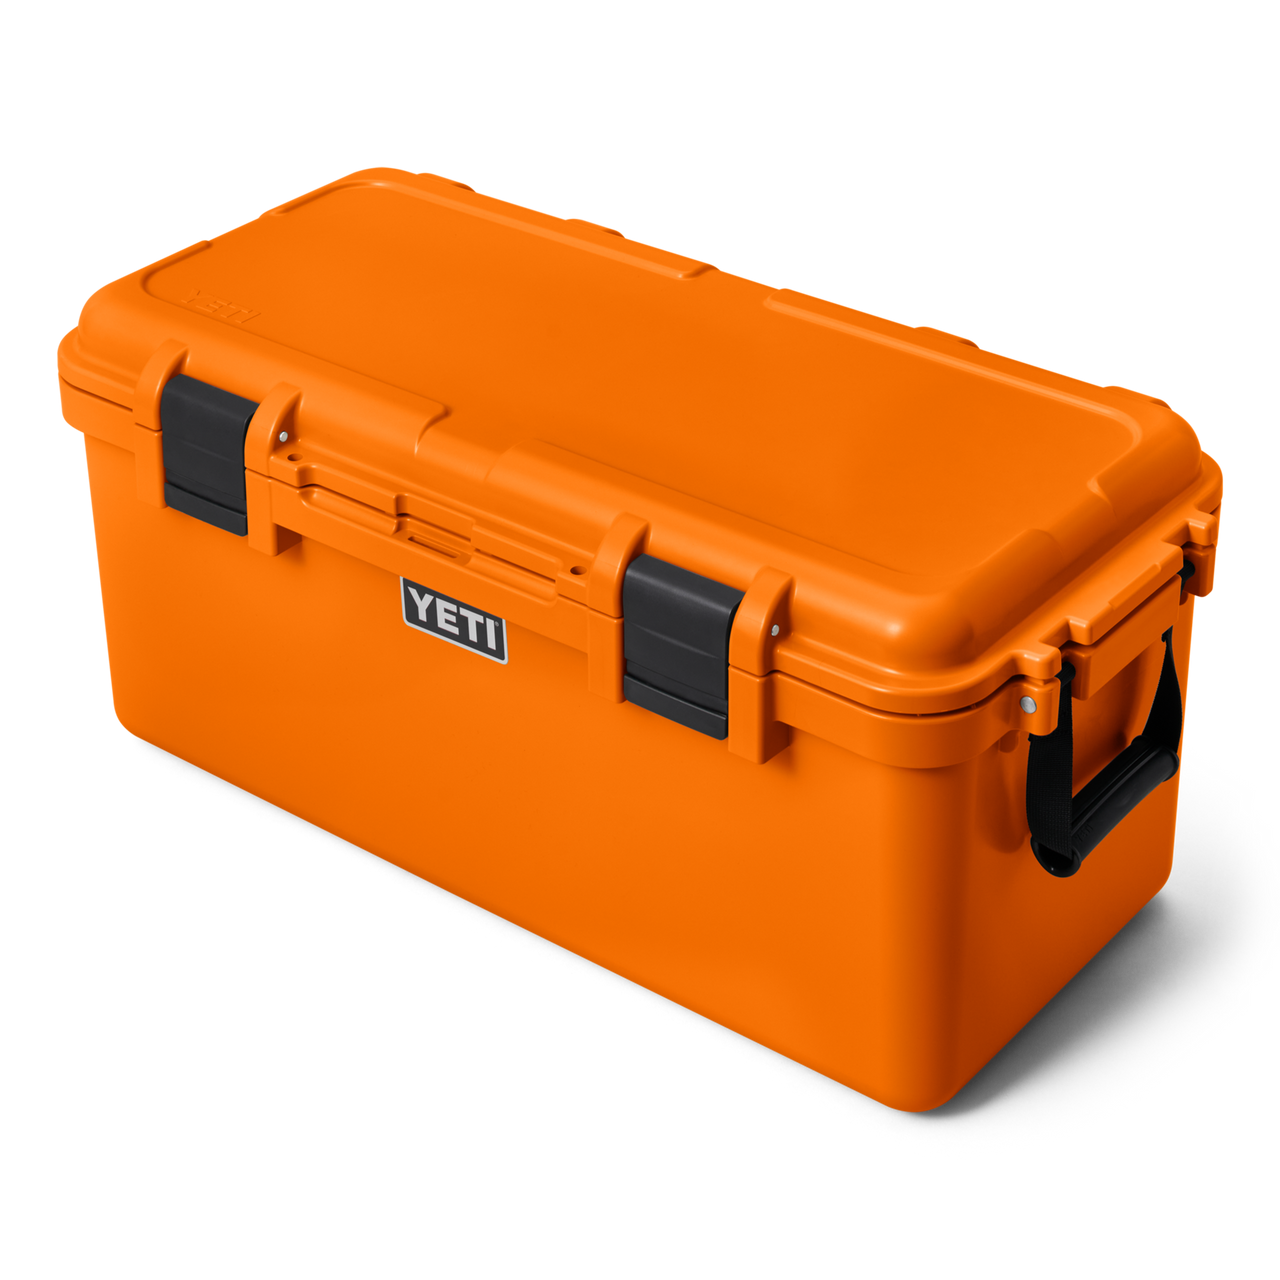 Yeti LoadOut GoBox 15 Gearbox King Crab Orange 26010000217 from